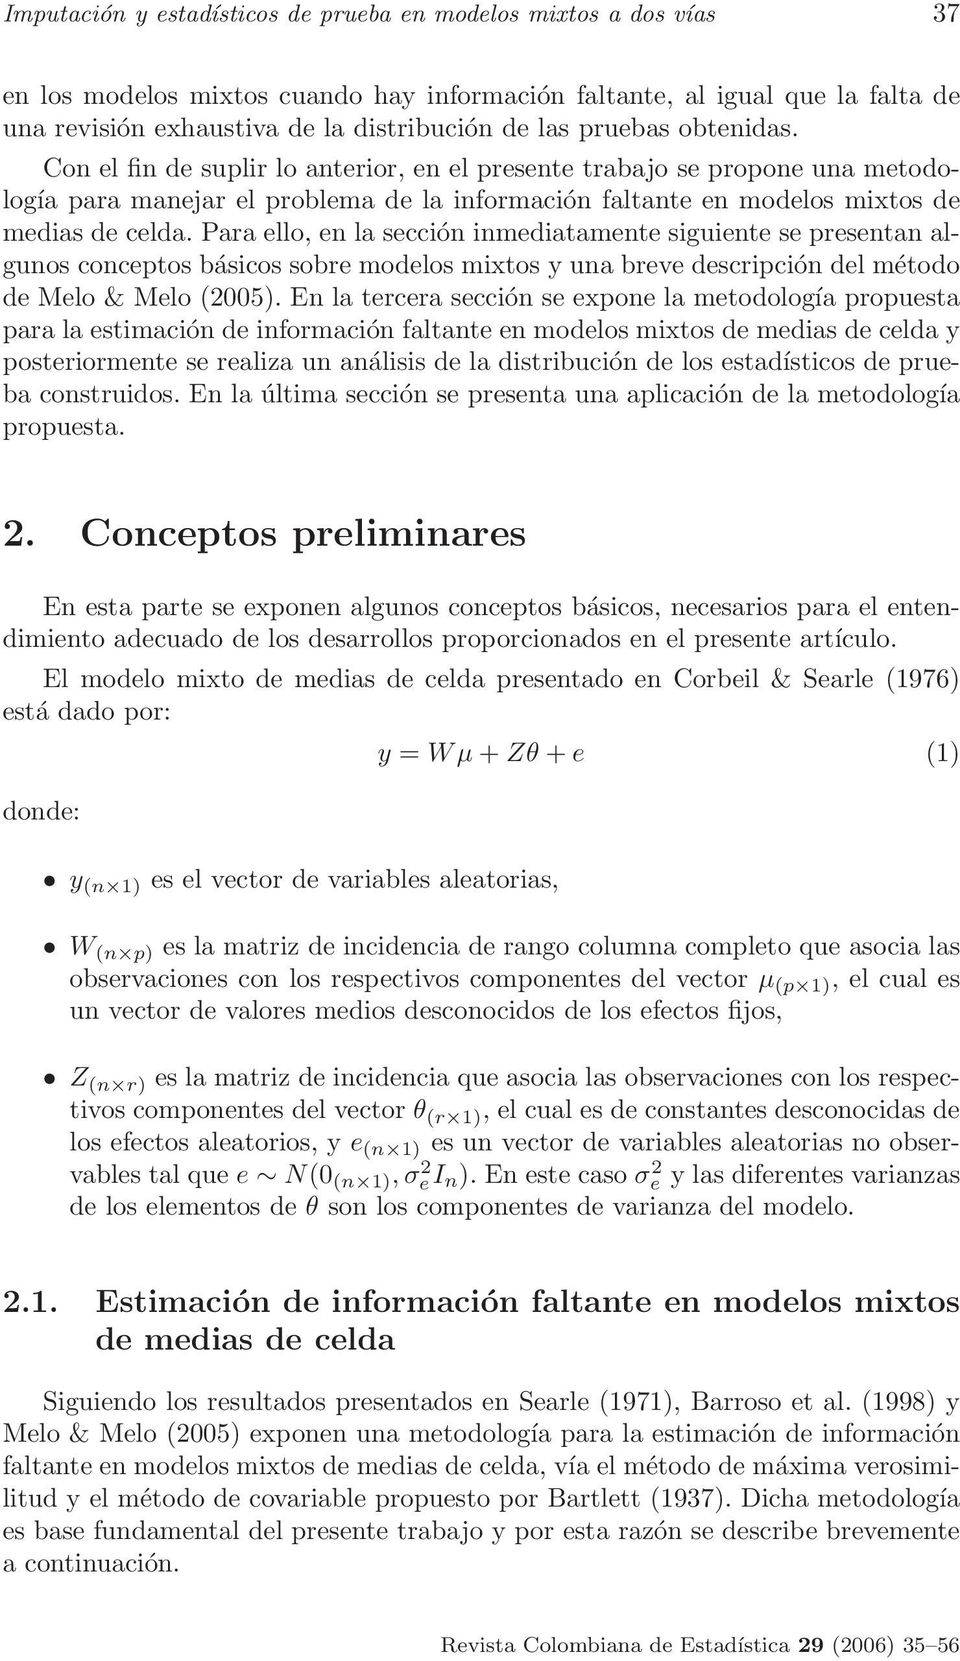 Para ello, en la sección inmediatamente siguiente se presentan algunos conceptos básicos sobre modelos mixtos y una breve descripción del método de Melo & Melo (2005).